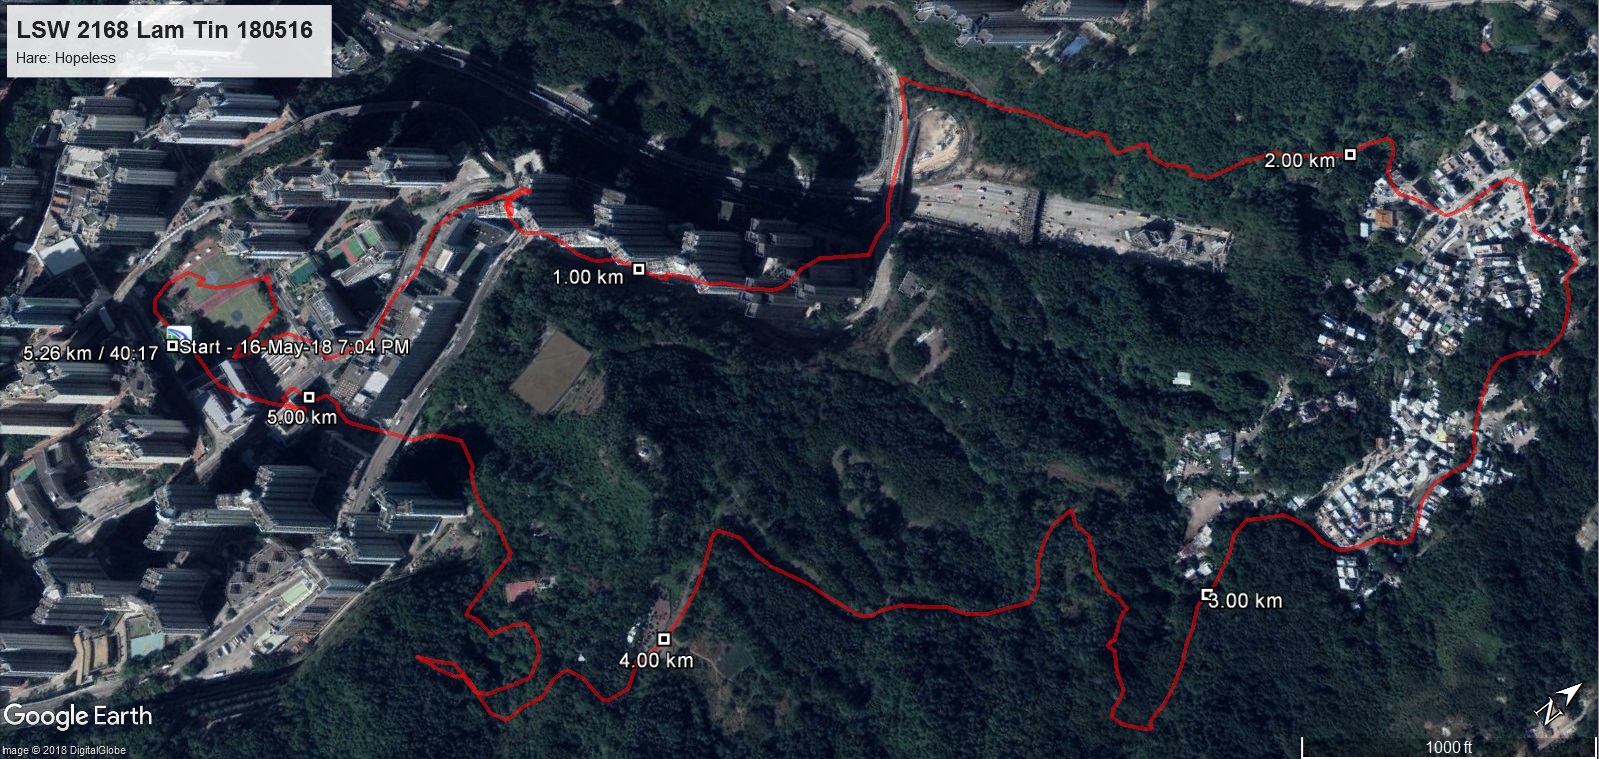 Lam Tin 180516 5.26km 40mins